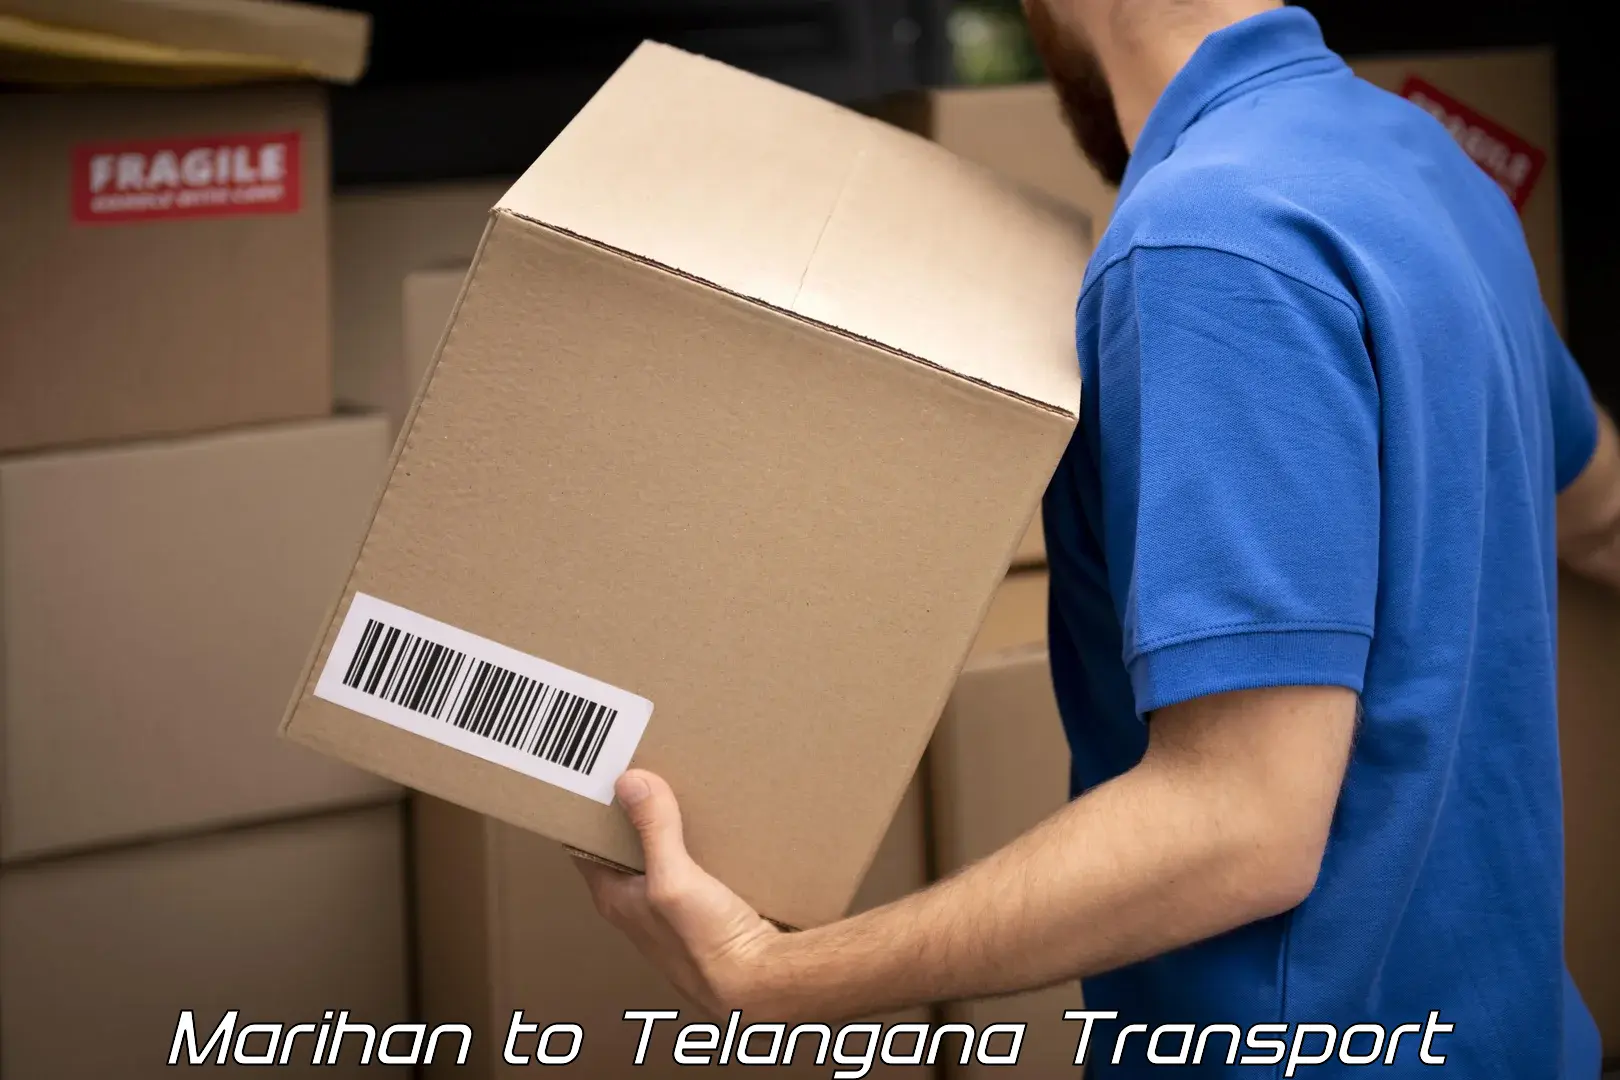 Daily parcel service transport Marihan to Telangana